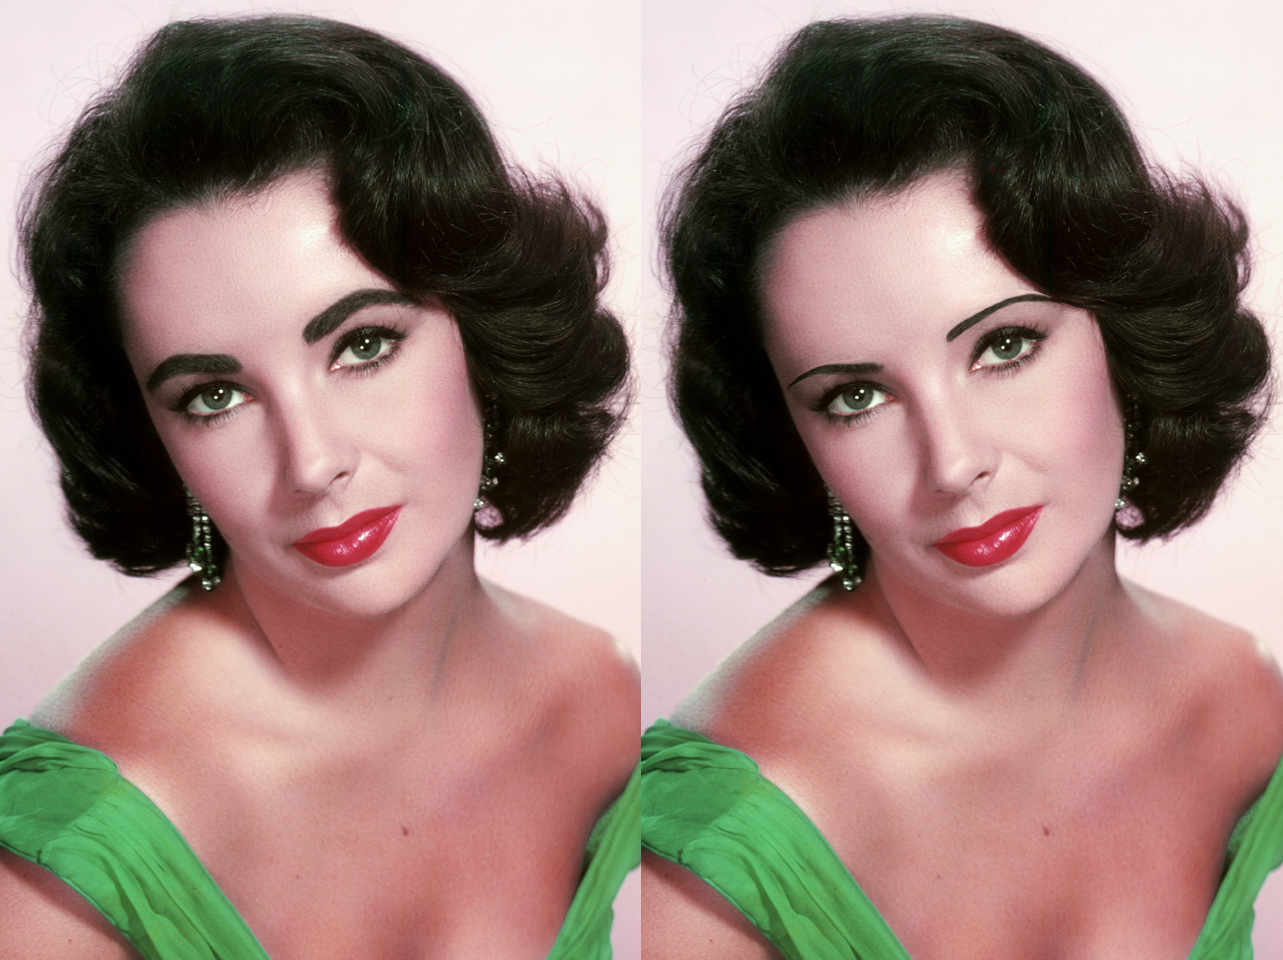 Elizabeth Taylors charakteristische Augenbrauen aus den 1950er Jahren im Vergleich zu einem digital bearbeiteten Look mit dünnen Brauen | Quelle: Getty Images